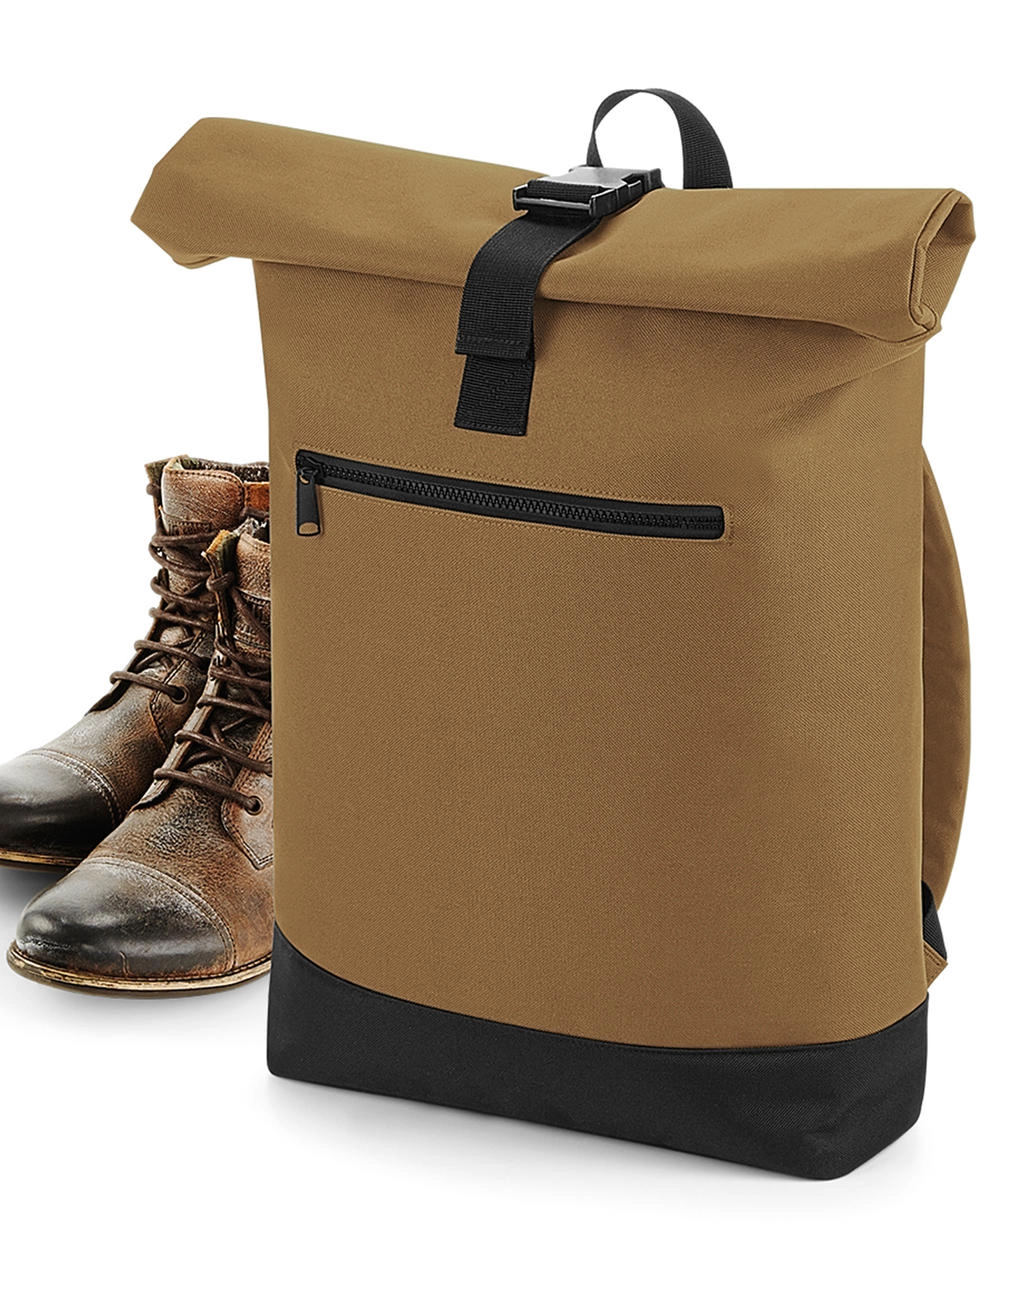 Roll-Top Backpack zum Besticken und Bedrucken mit Ihren Logo, Schriftzug oder Motiv.